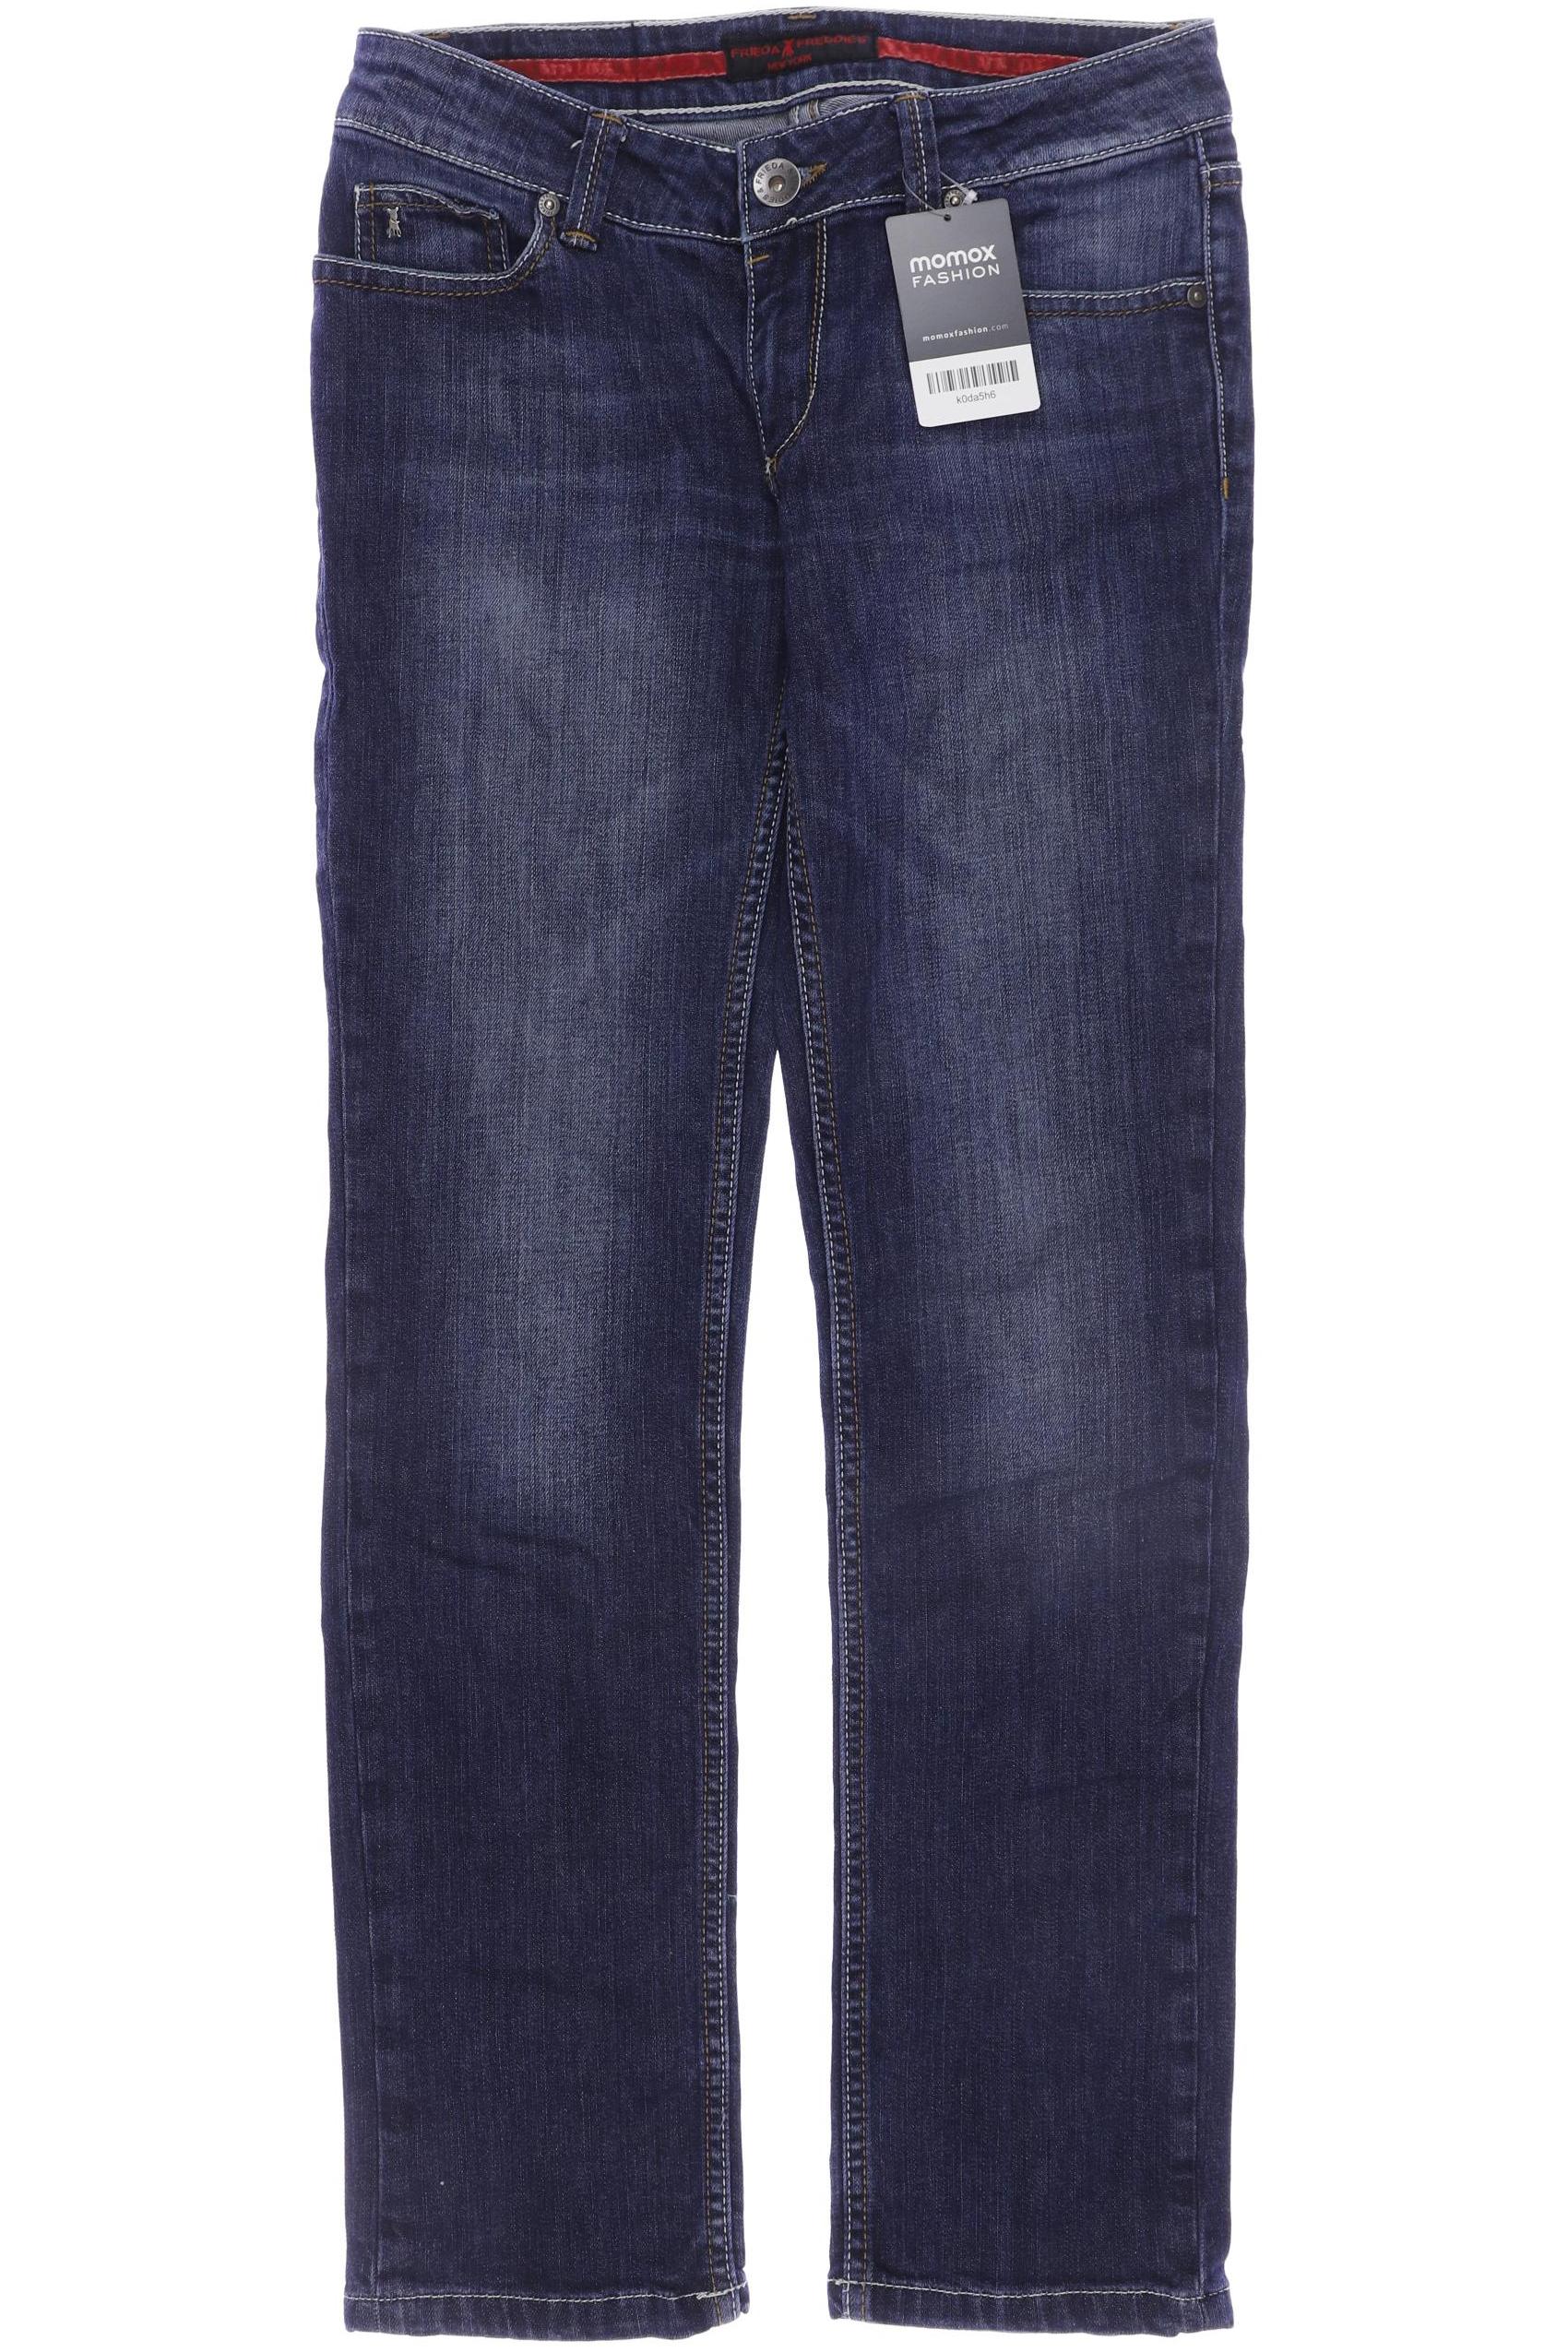 Friedafreddies Damen Jeans, marineblau, Gr. 36 von FRIEDAFREDDIES